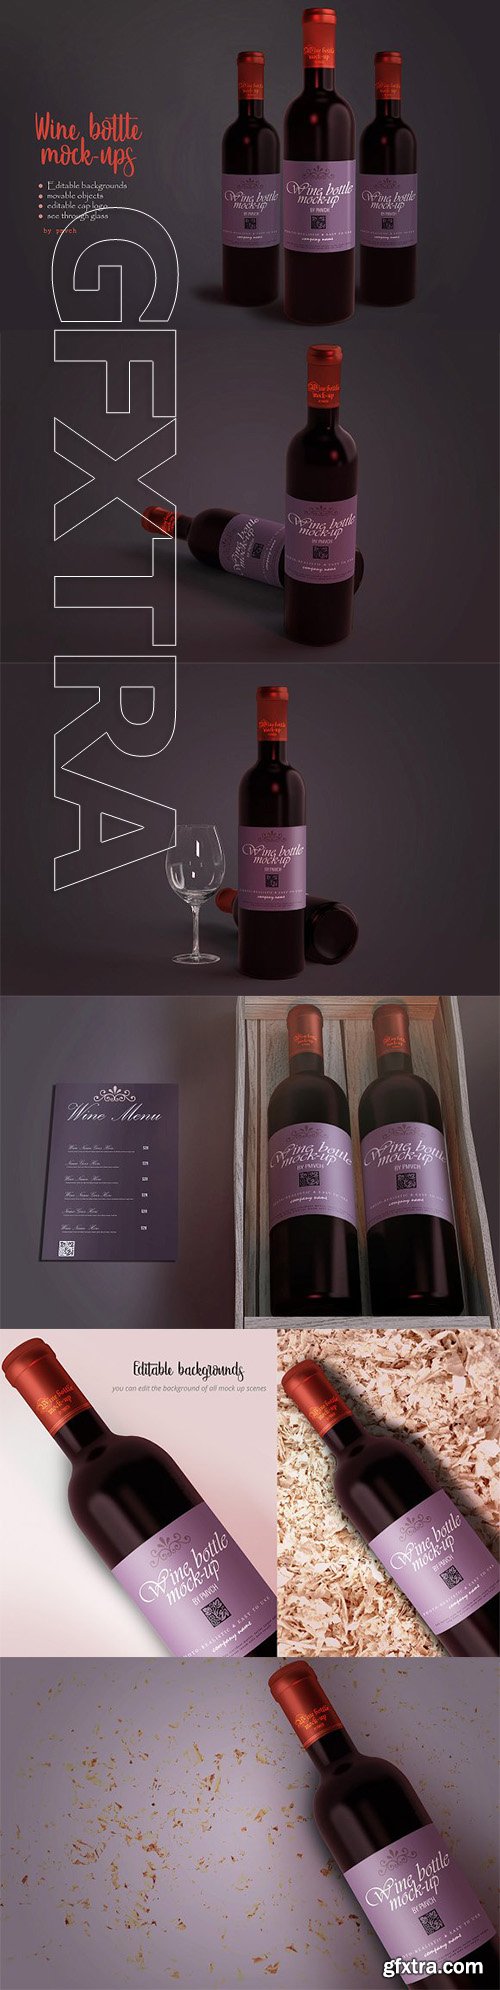 CreativeMarket - Wine Bottle Label Mockups 2369554